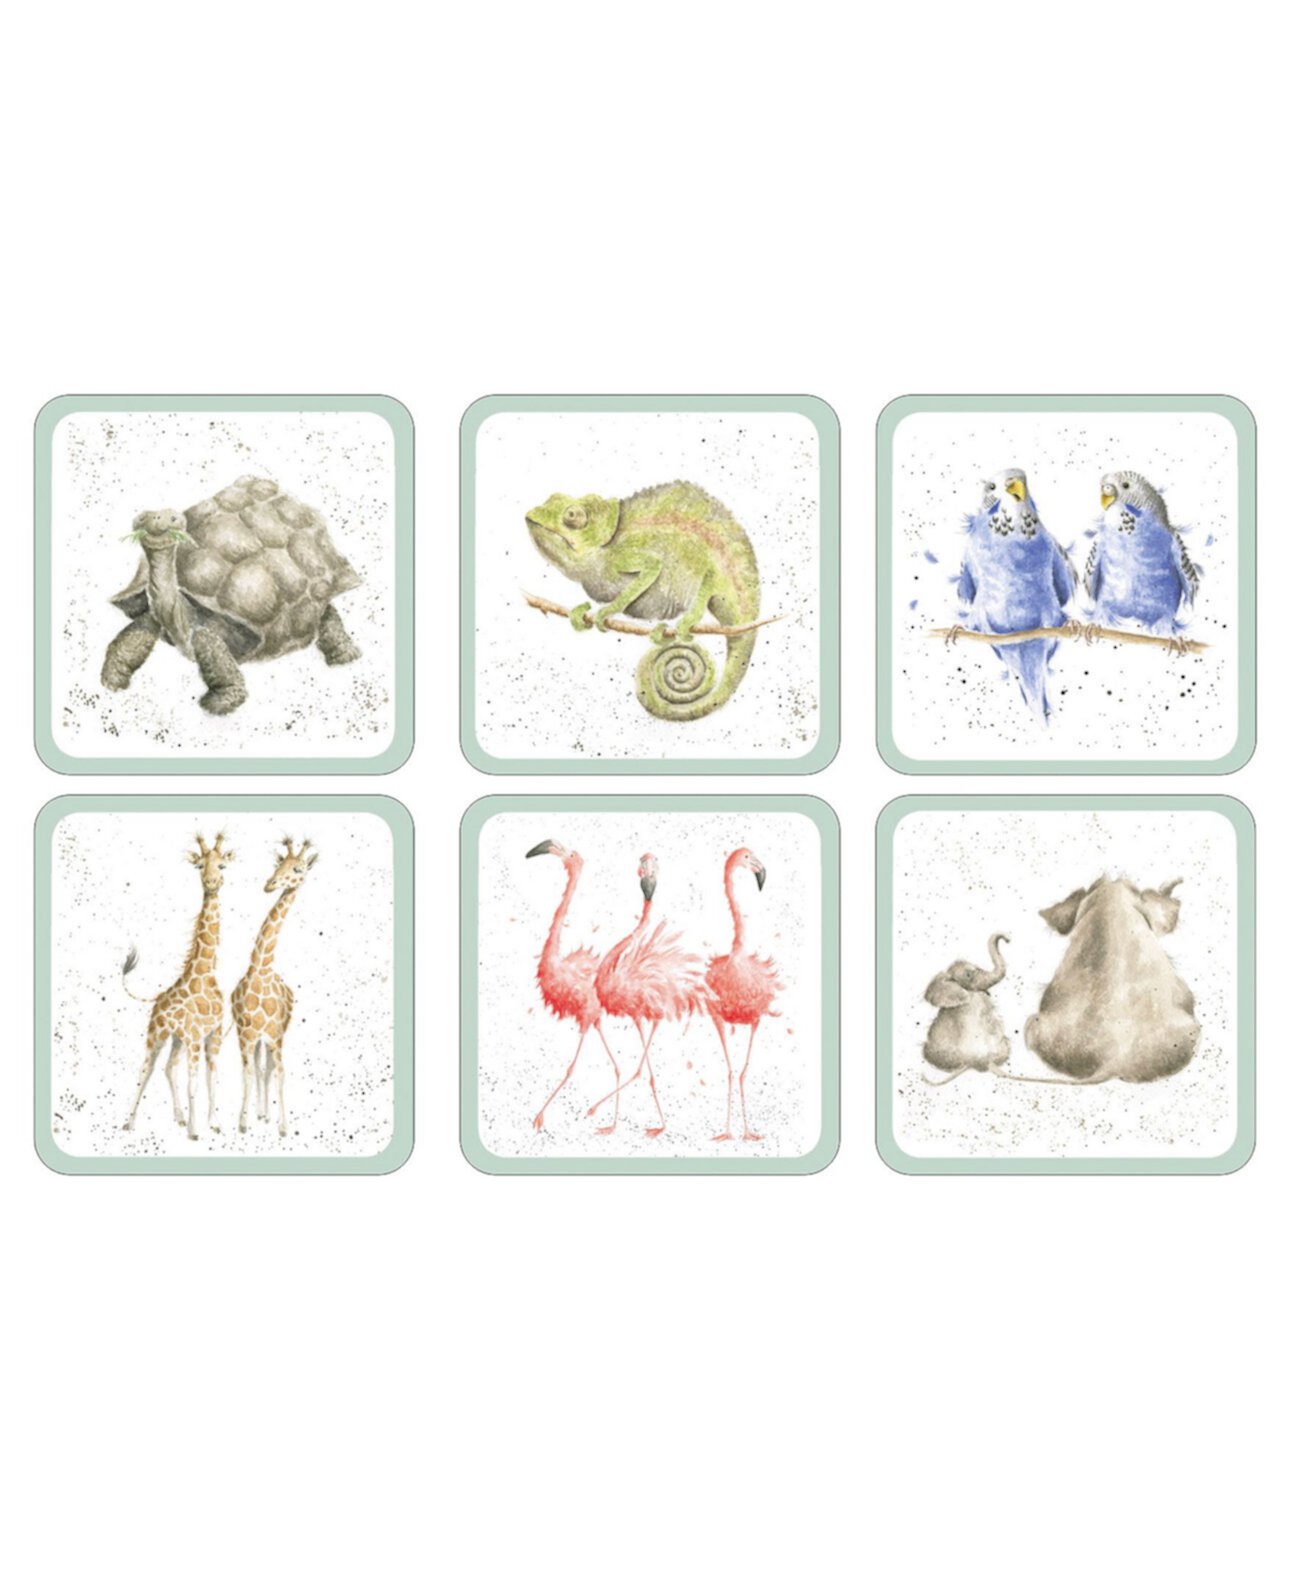 Зоологические подстаканники - набор из 6 шт. Wrendale Designs